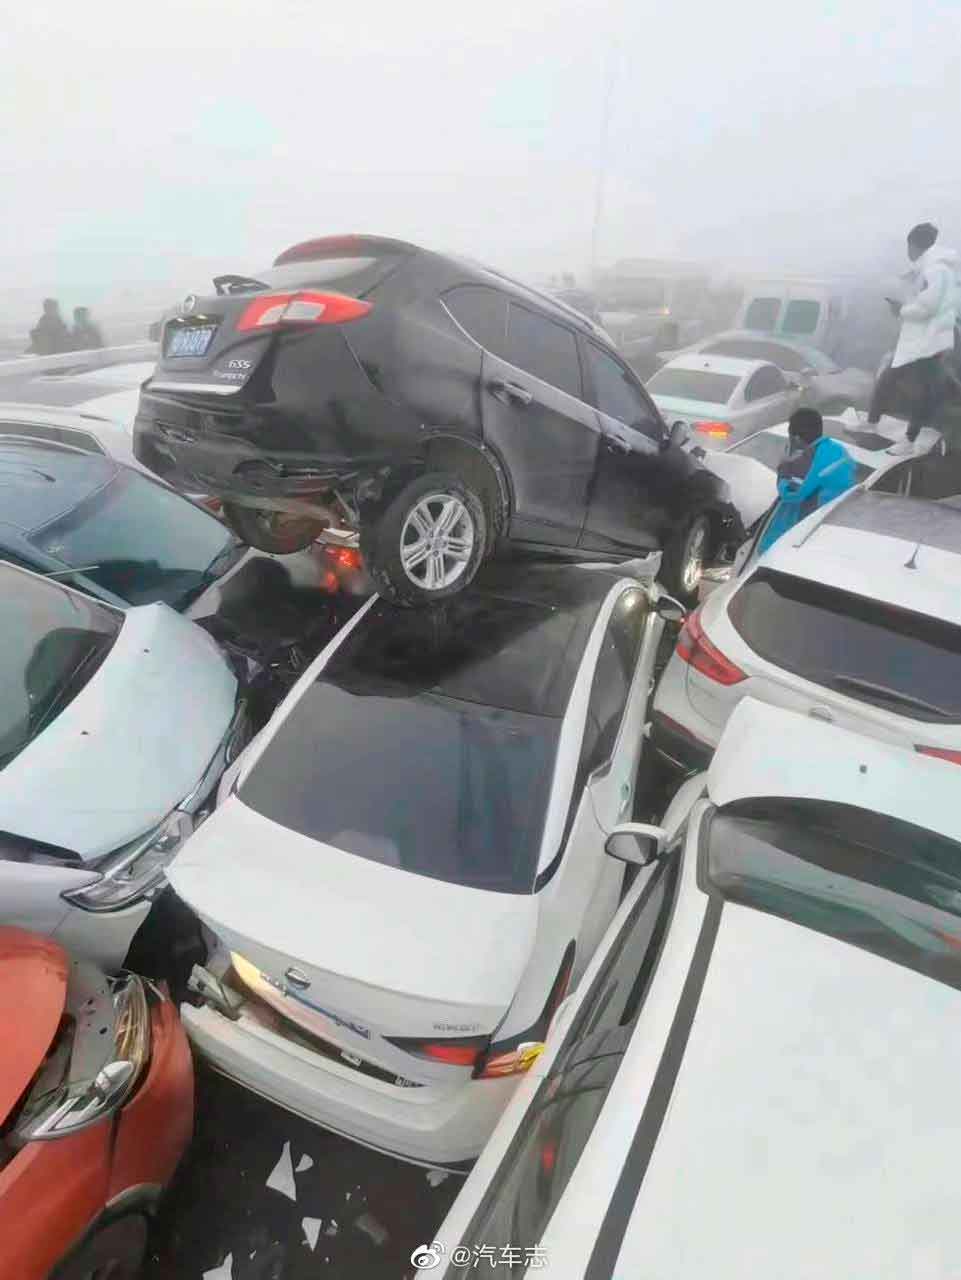 VÍDEO: Acidente envolvendo mais de 200 veículos na China